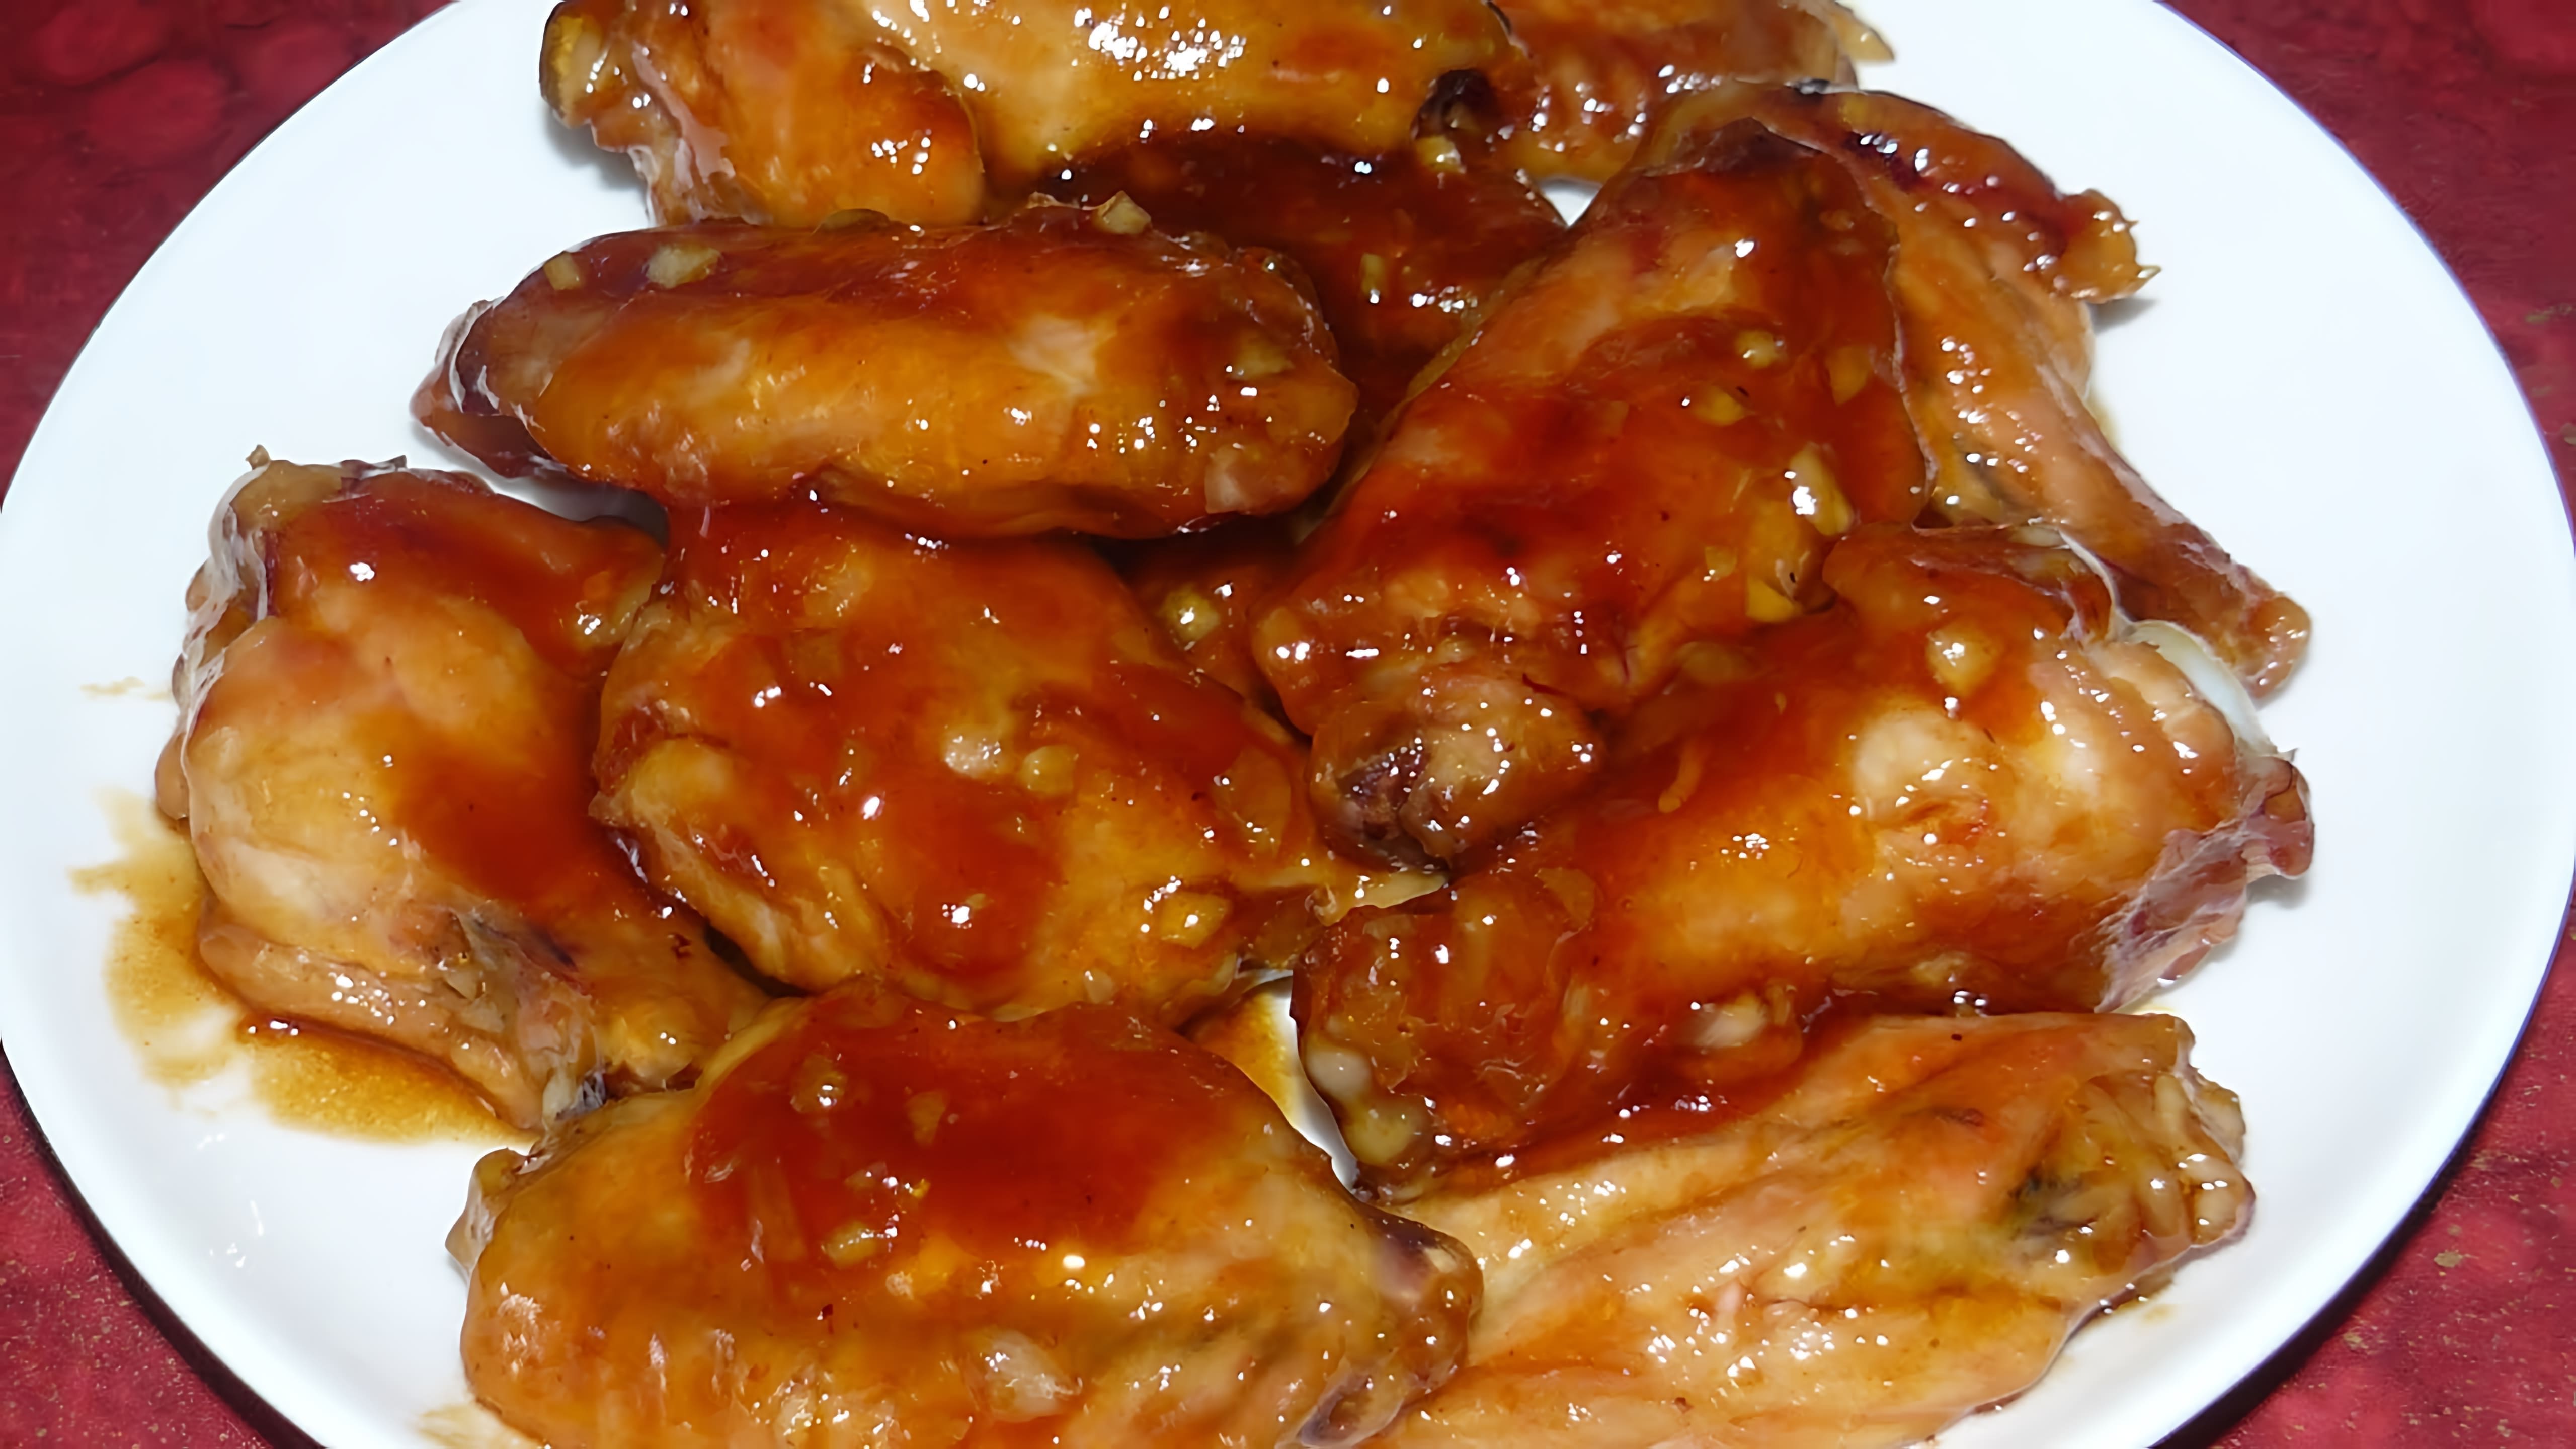 В этом видео демонстрируется рецепт приготовления куриных крылышек в медово-соевом соусе